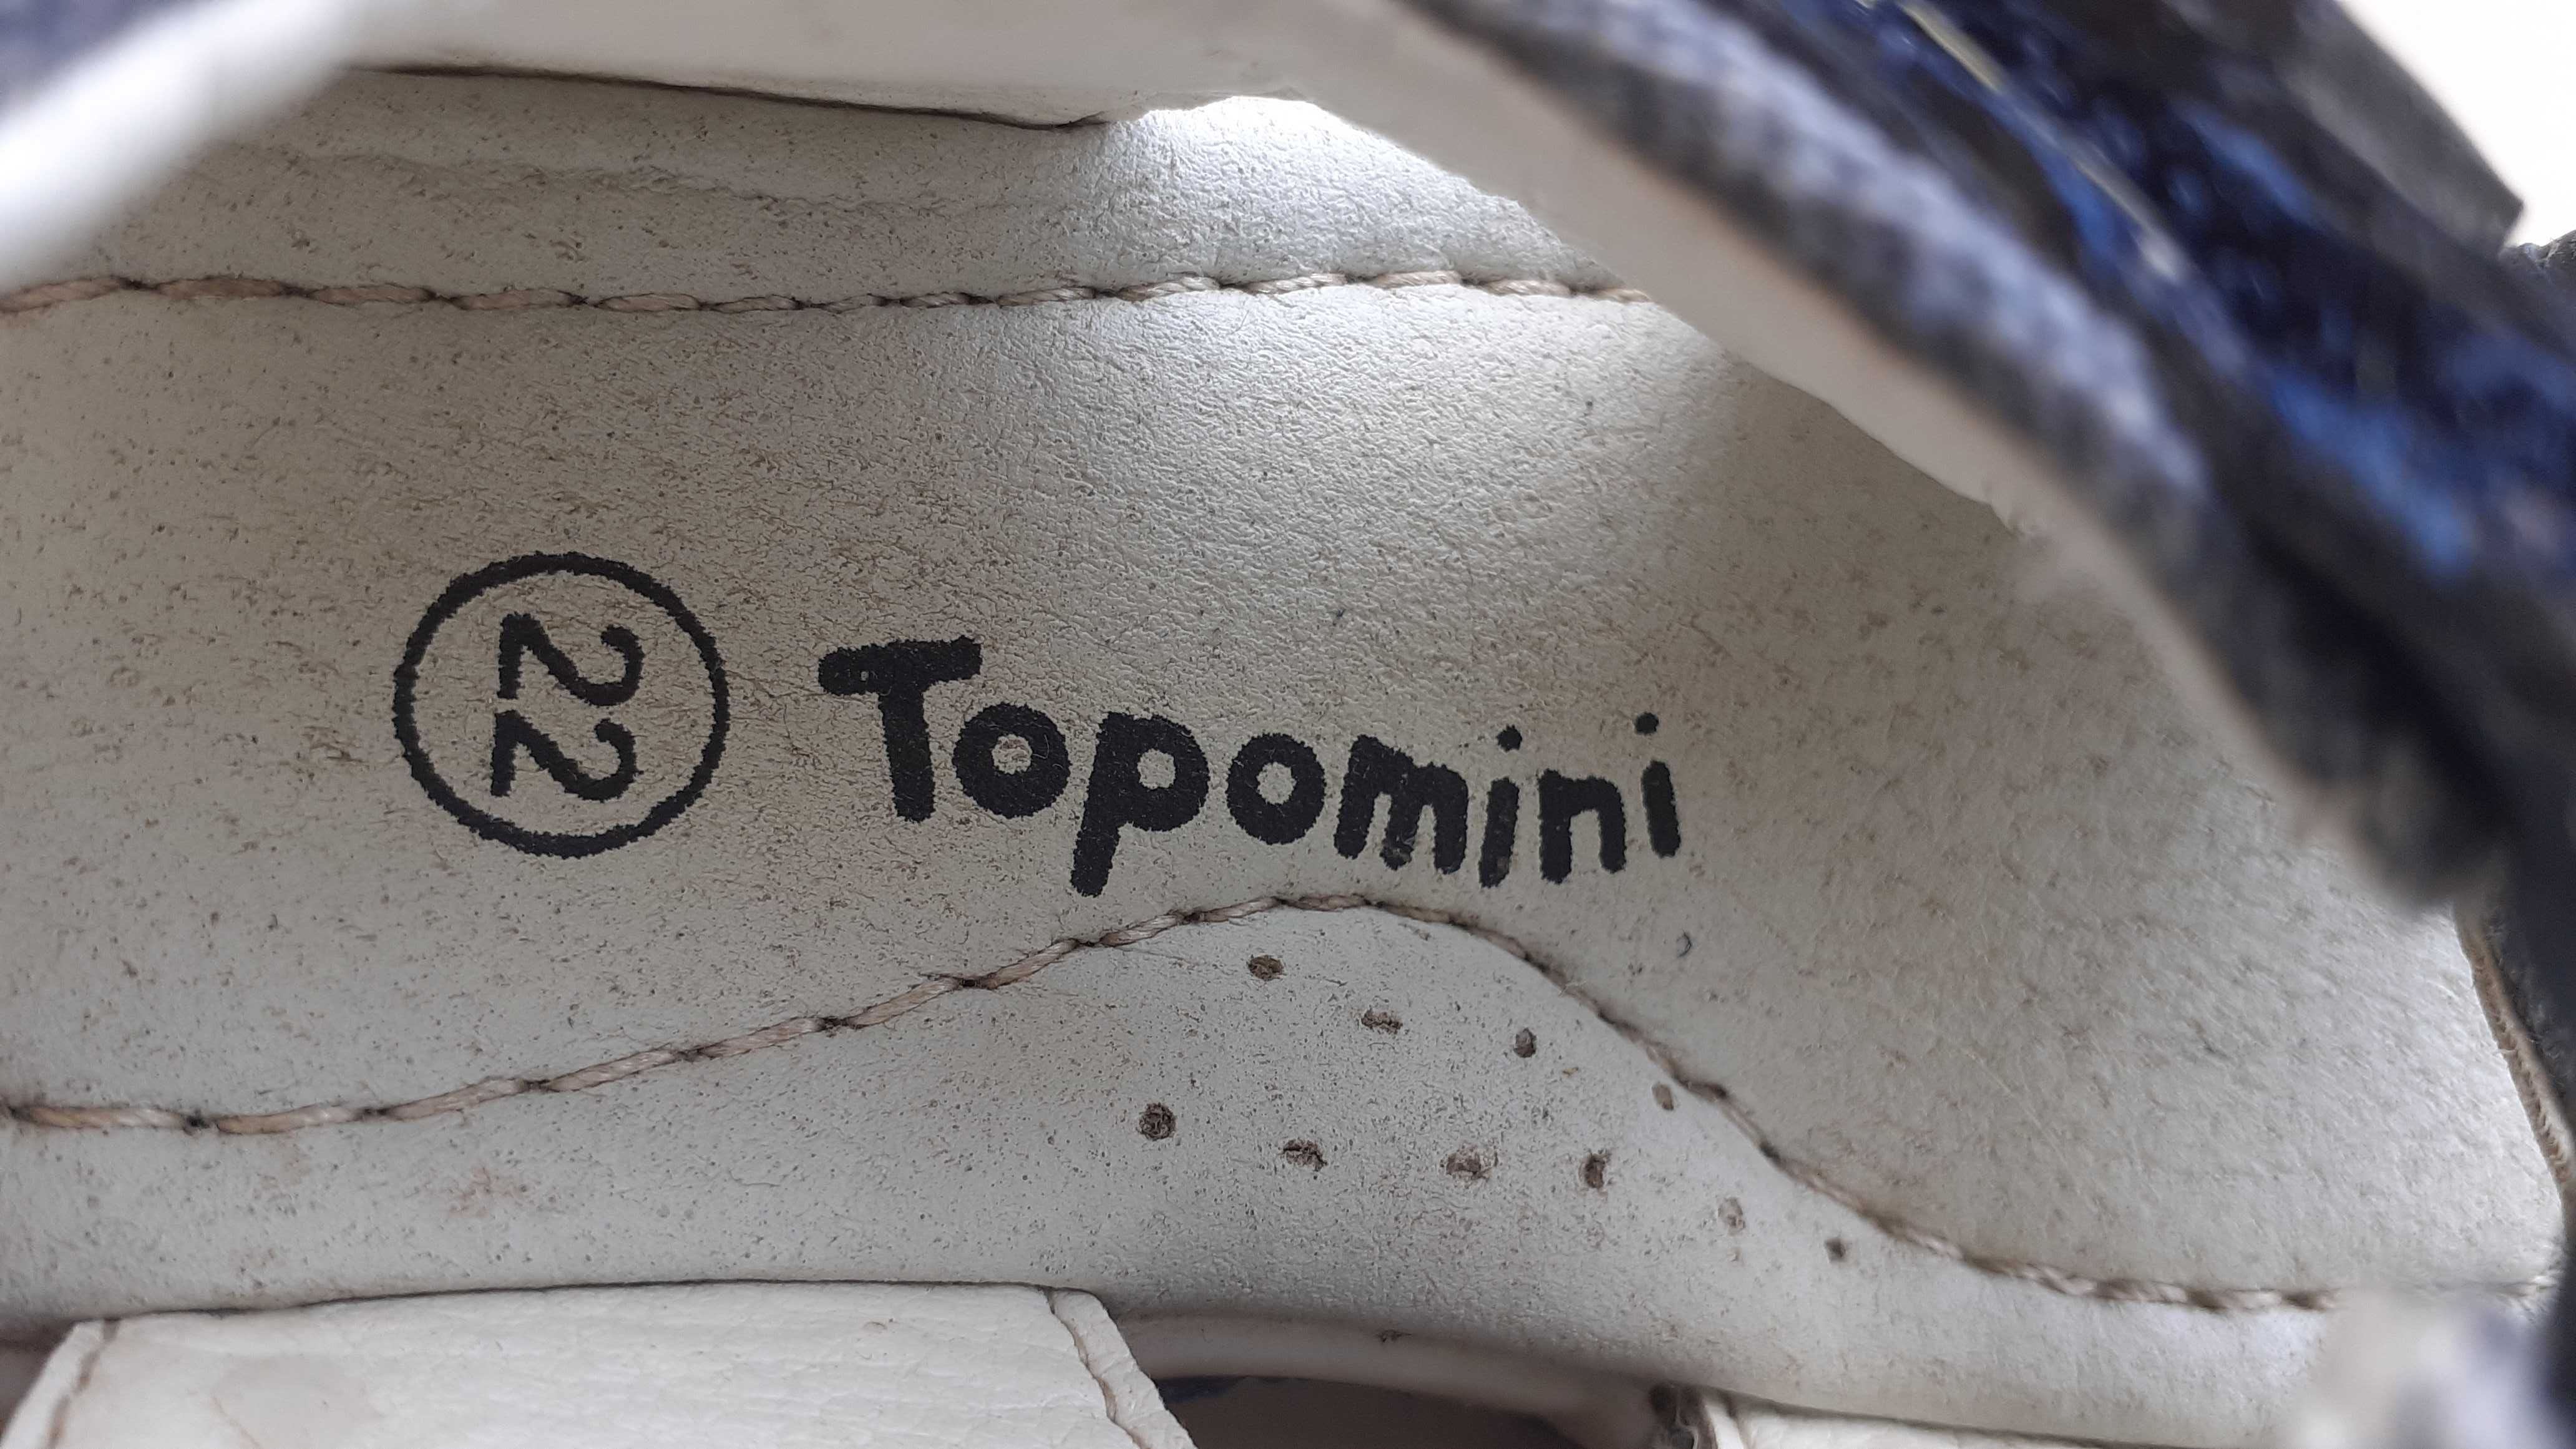 Босоножки для мальчика фирмы Topomini. размер 22.